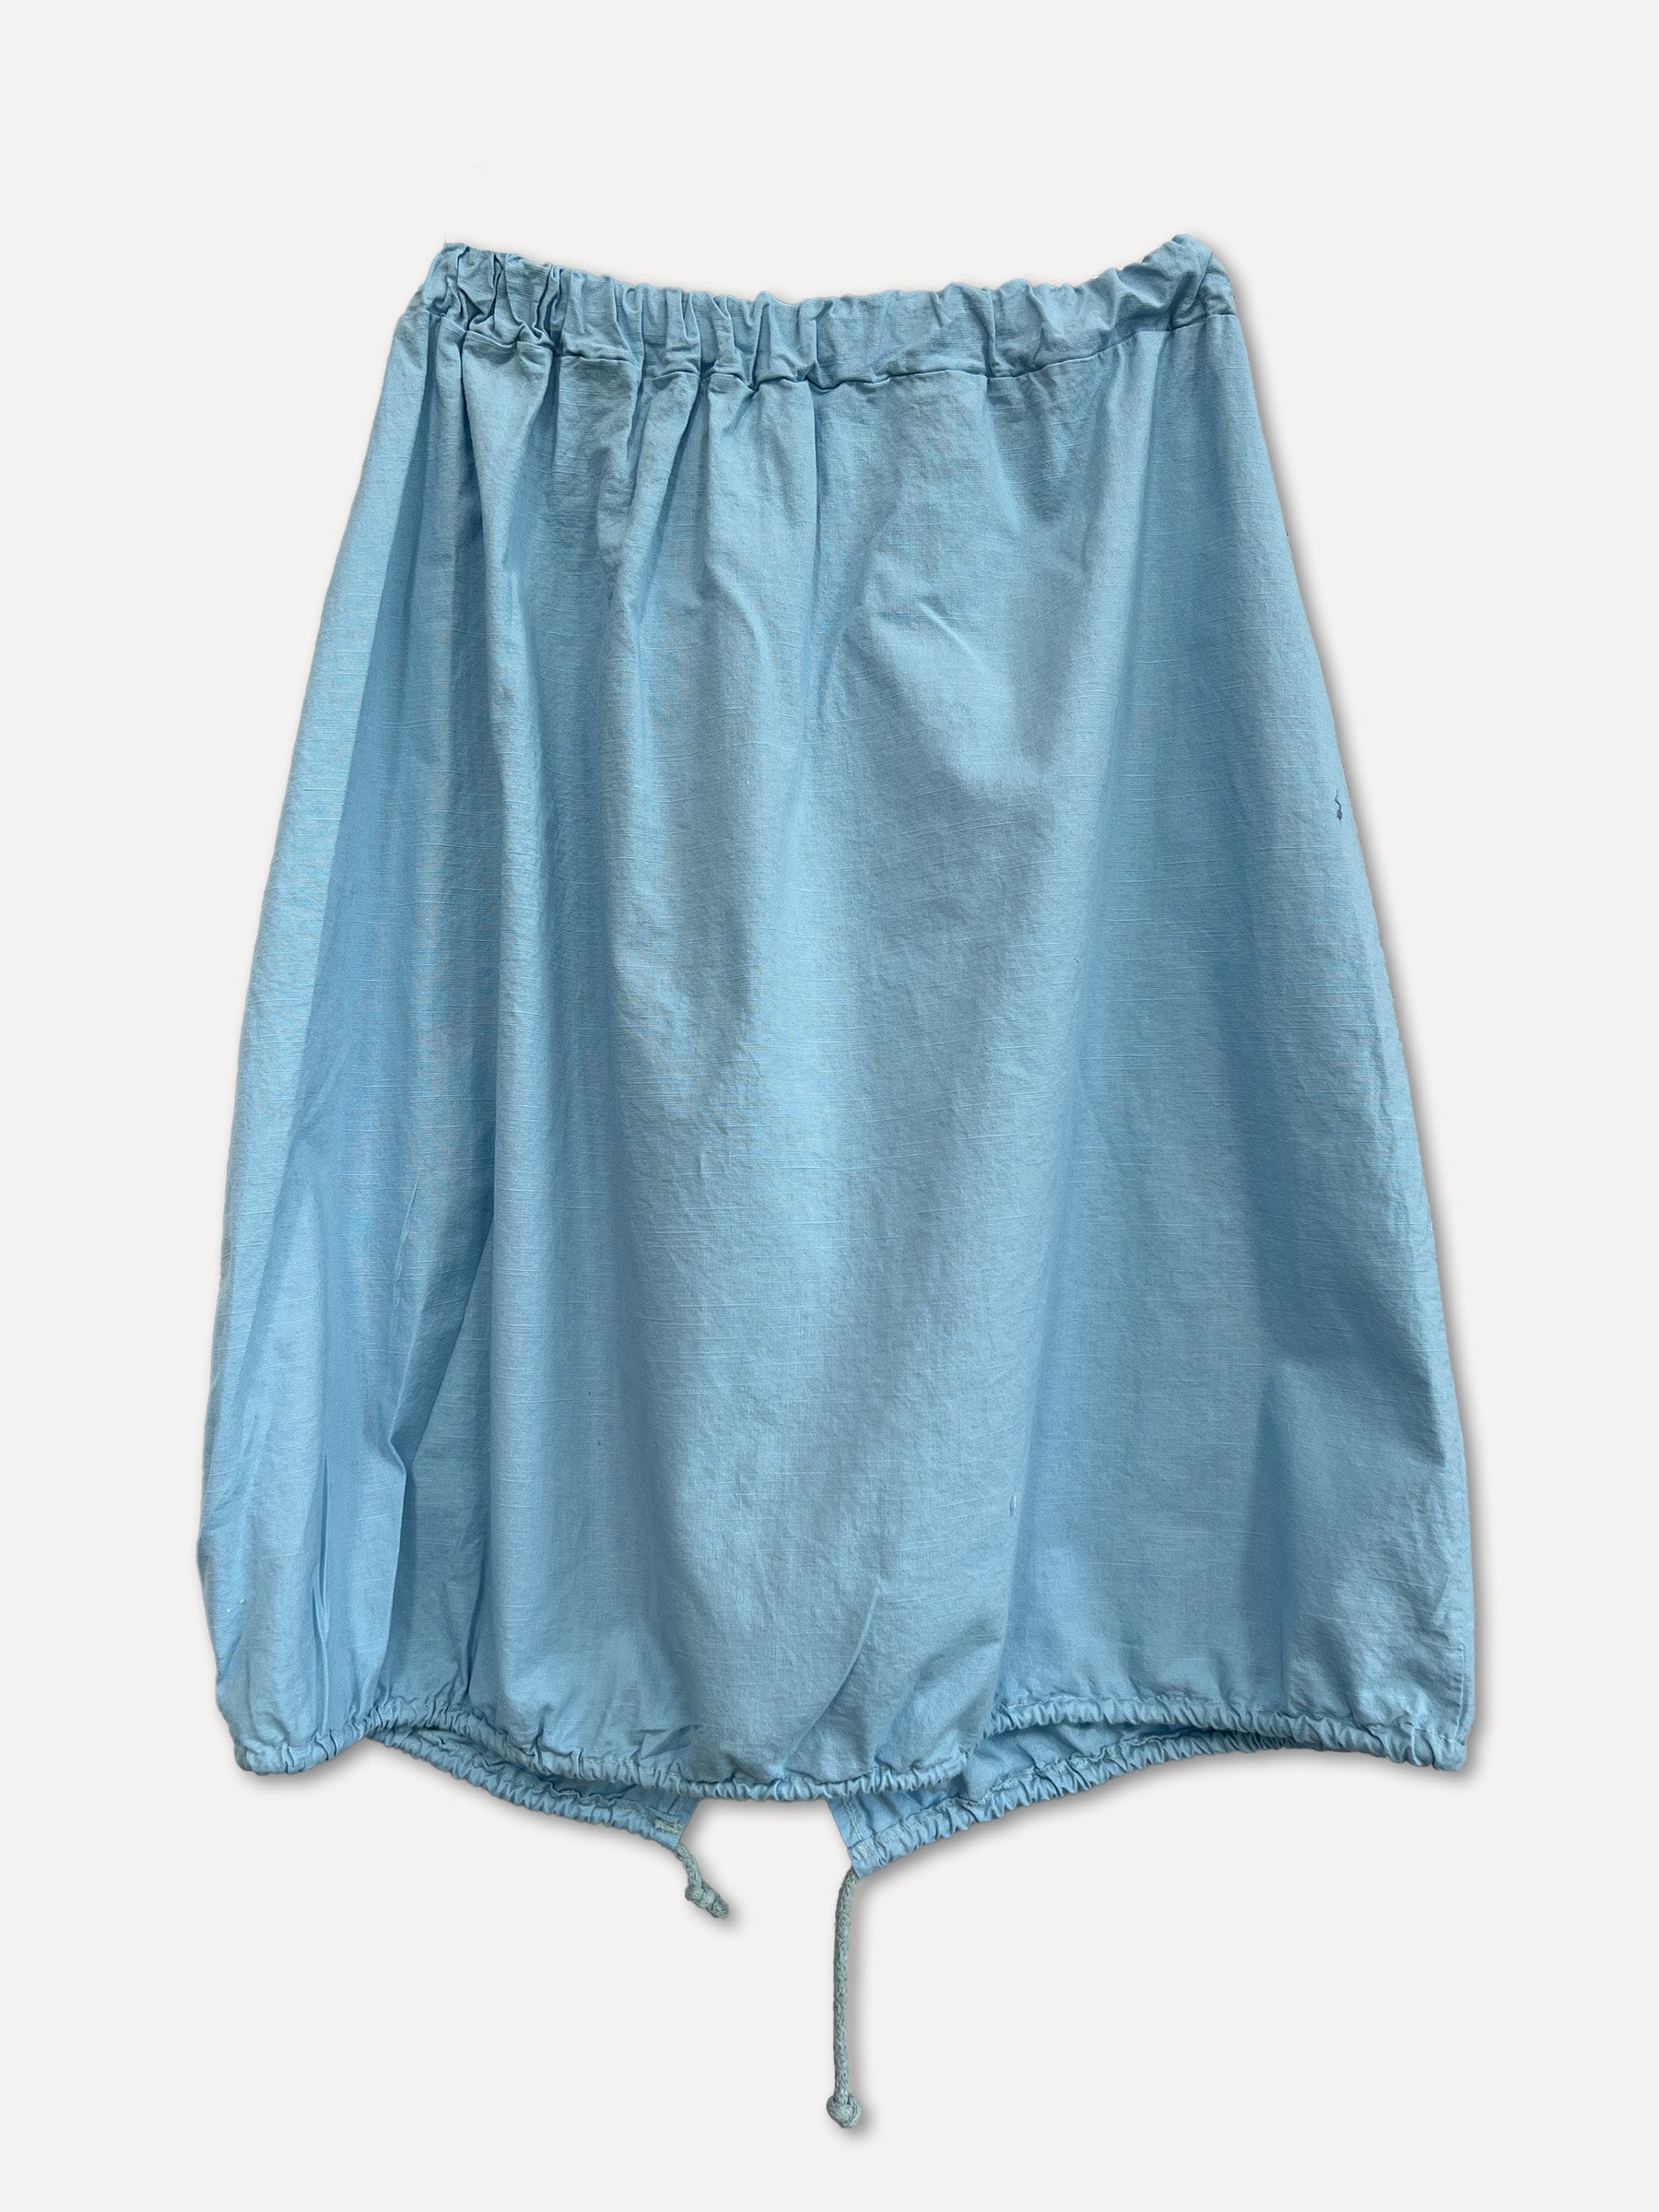 ROMA Skirt, Blue